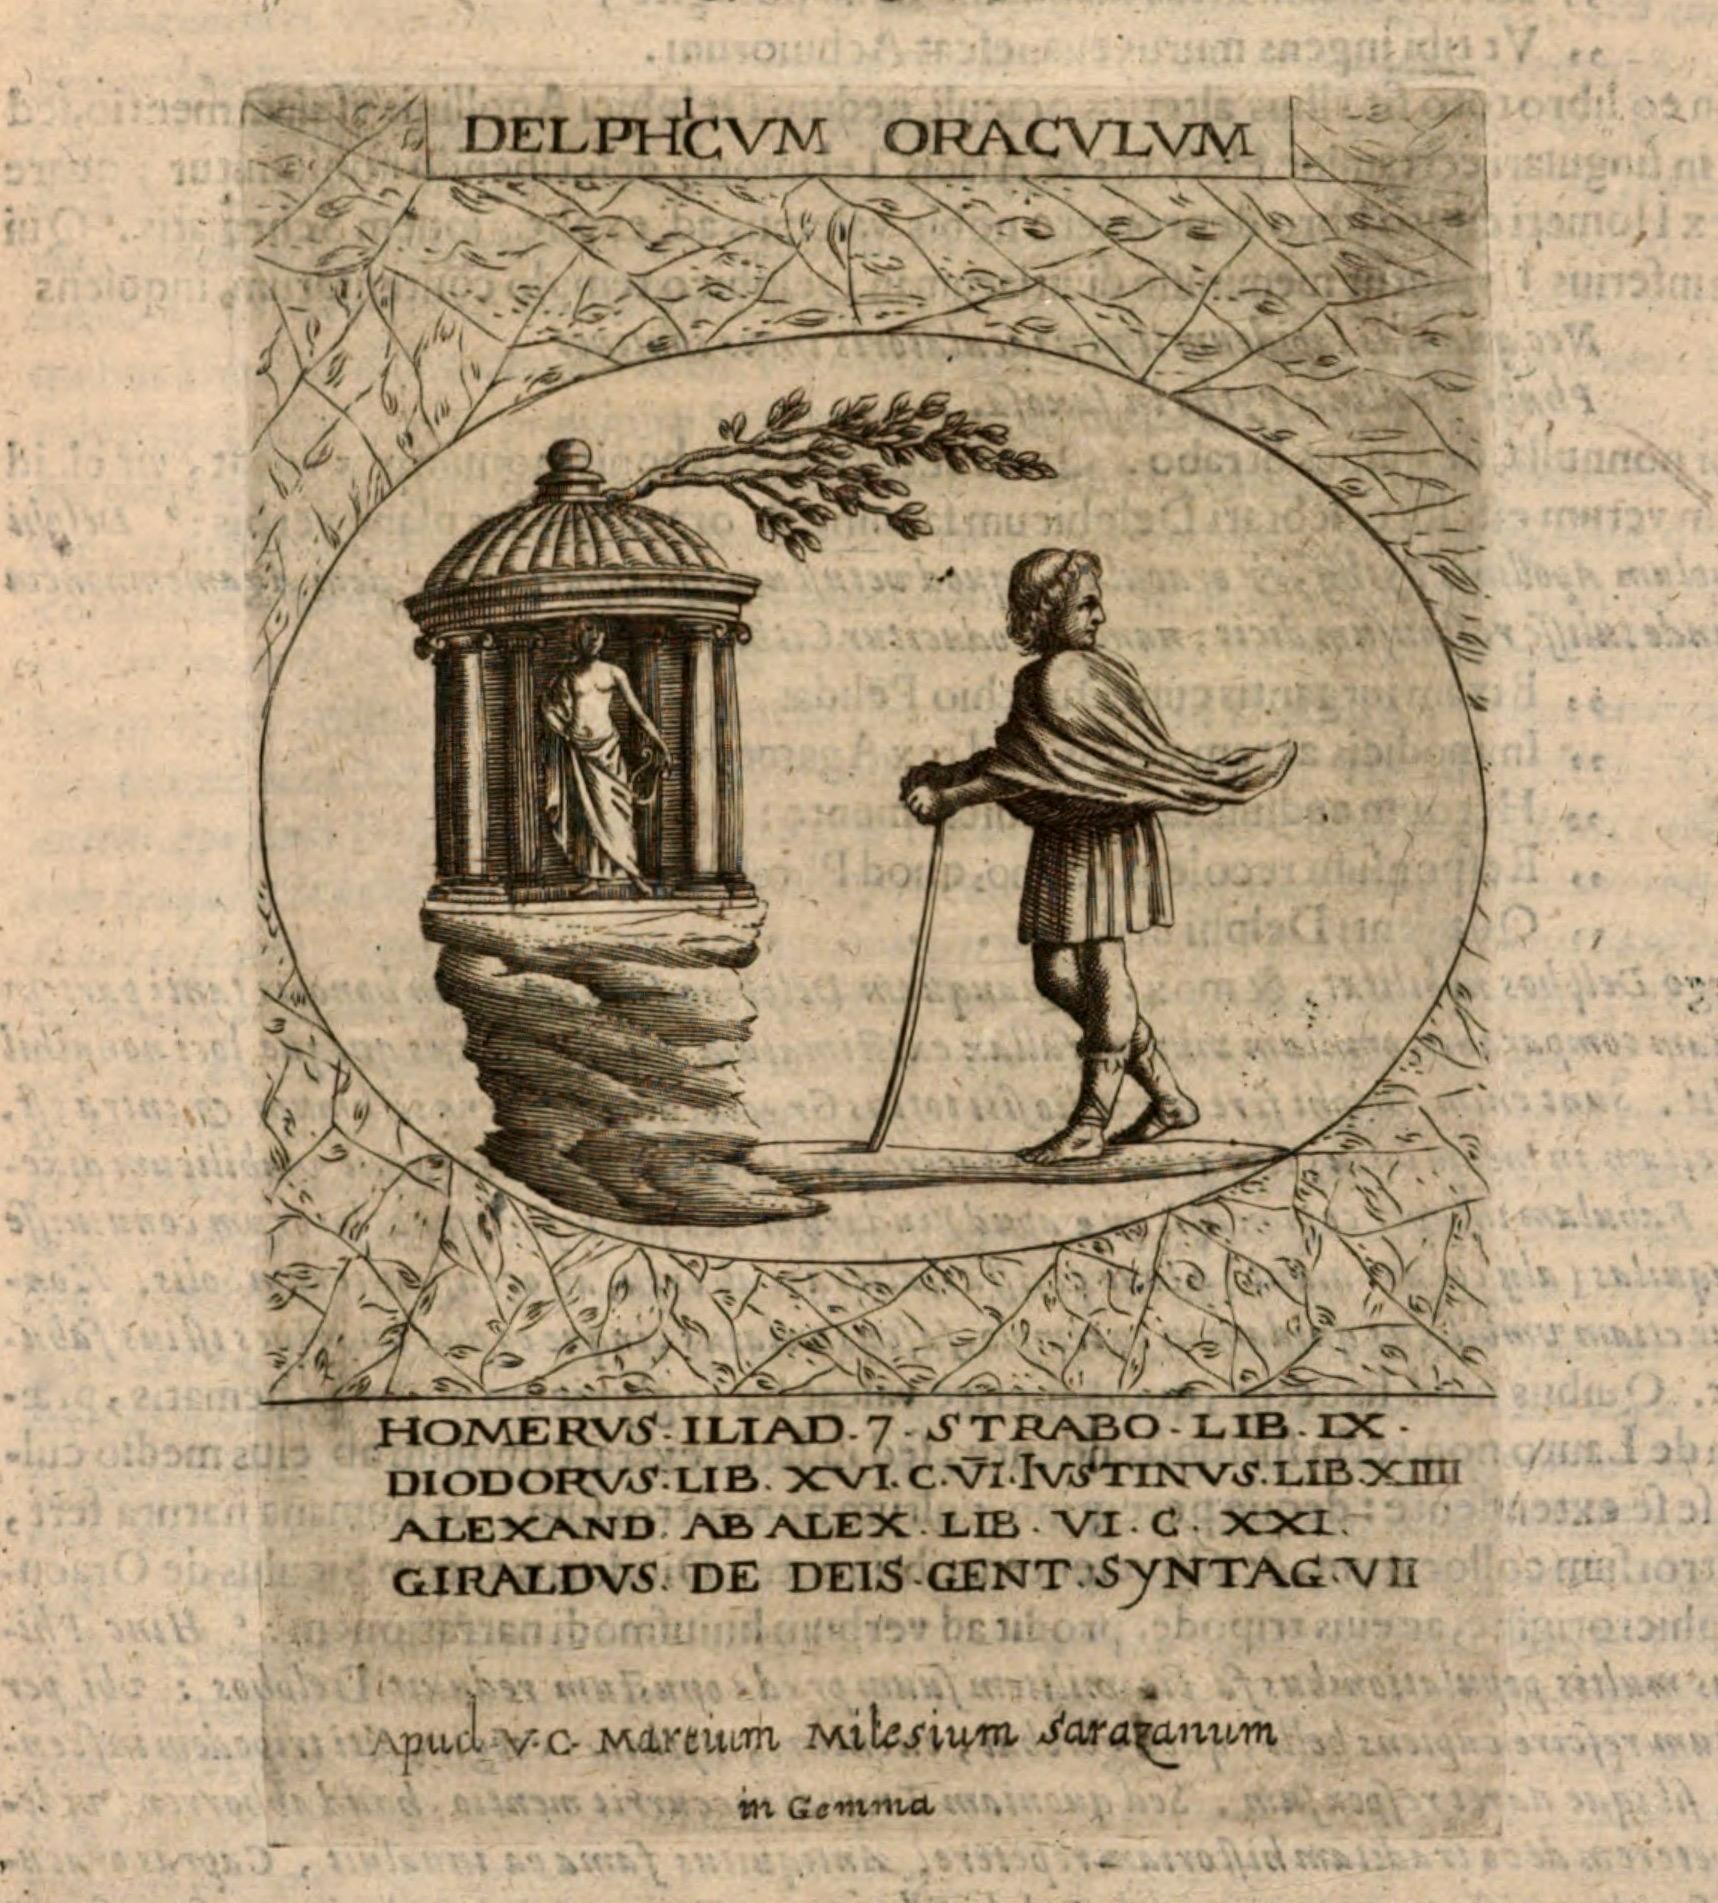 Delphicum oraculum, Fortunii Liceti Hieroglyphica, siue Antiqua schemata gemmarum anularium, Patavii 1653. Bayerische Staatsbibliothek, Μόναχο.